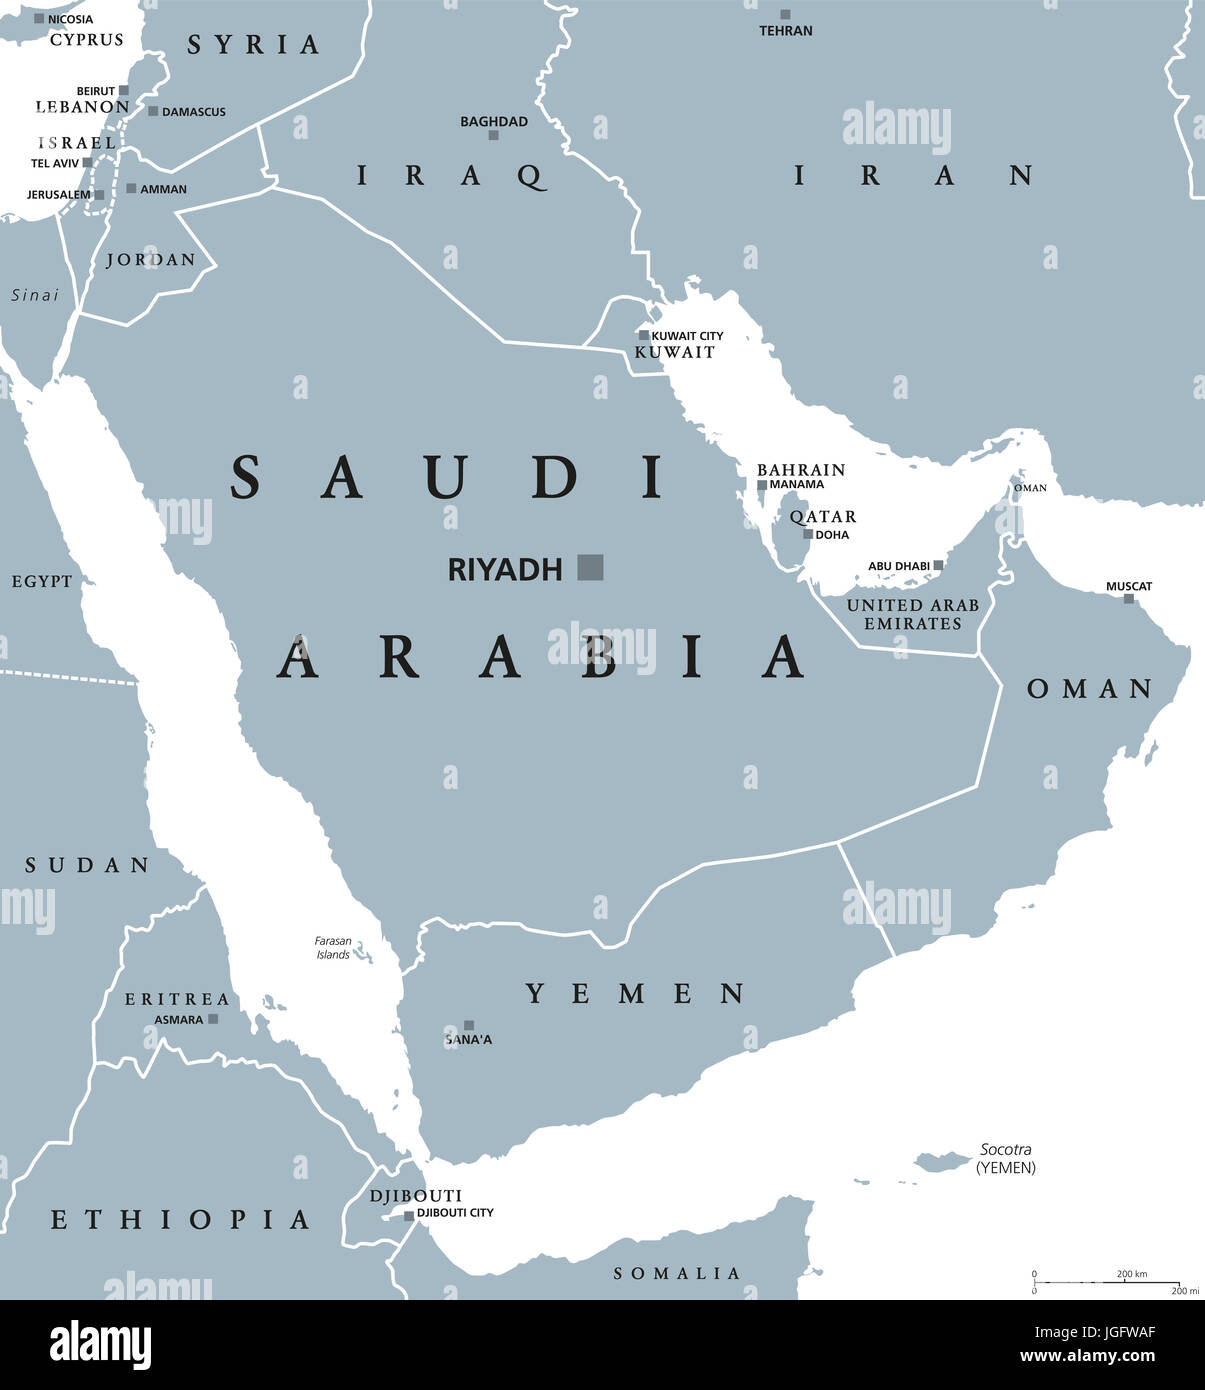 Arabia Saudita mapa político con la capital Riad. Reino y estado árabe en Asia occidental y Oriente Medio. País en la Península Arábiga. Ilustración. Foto de stock